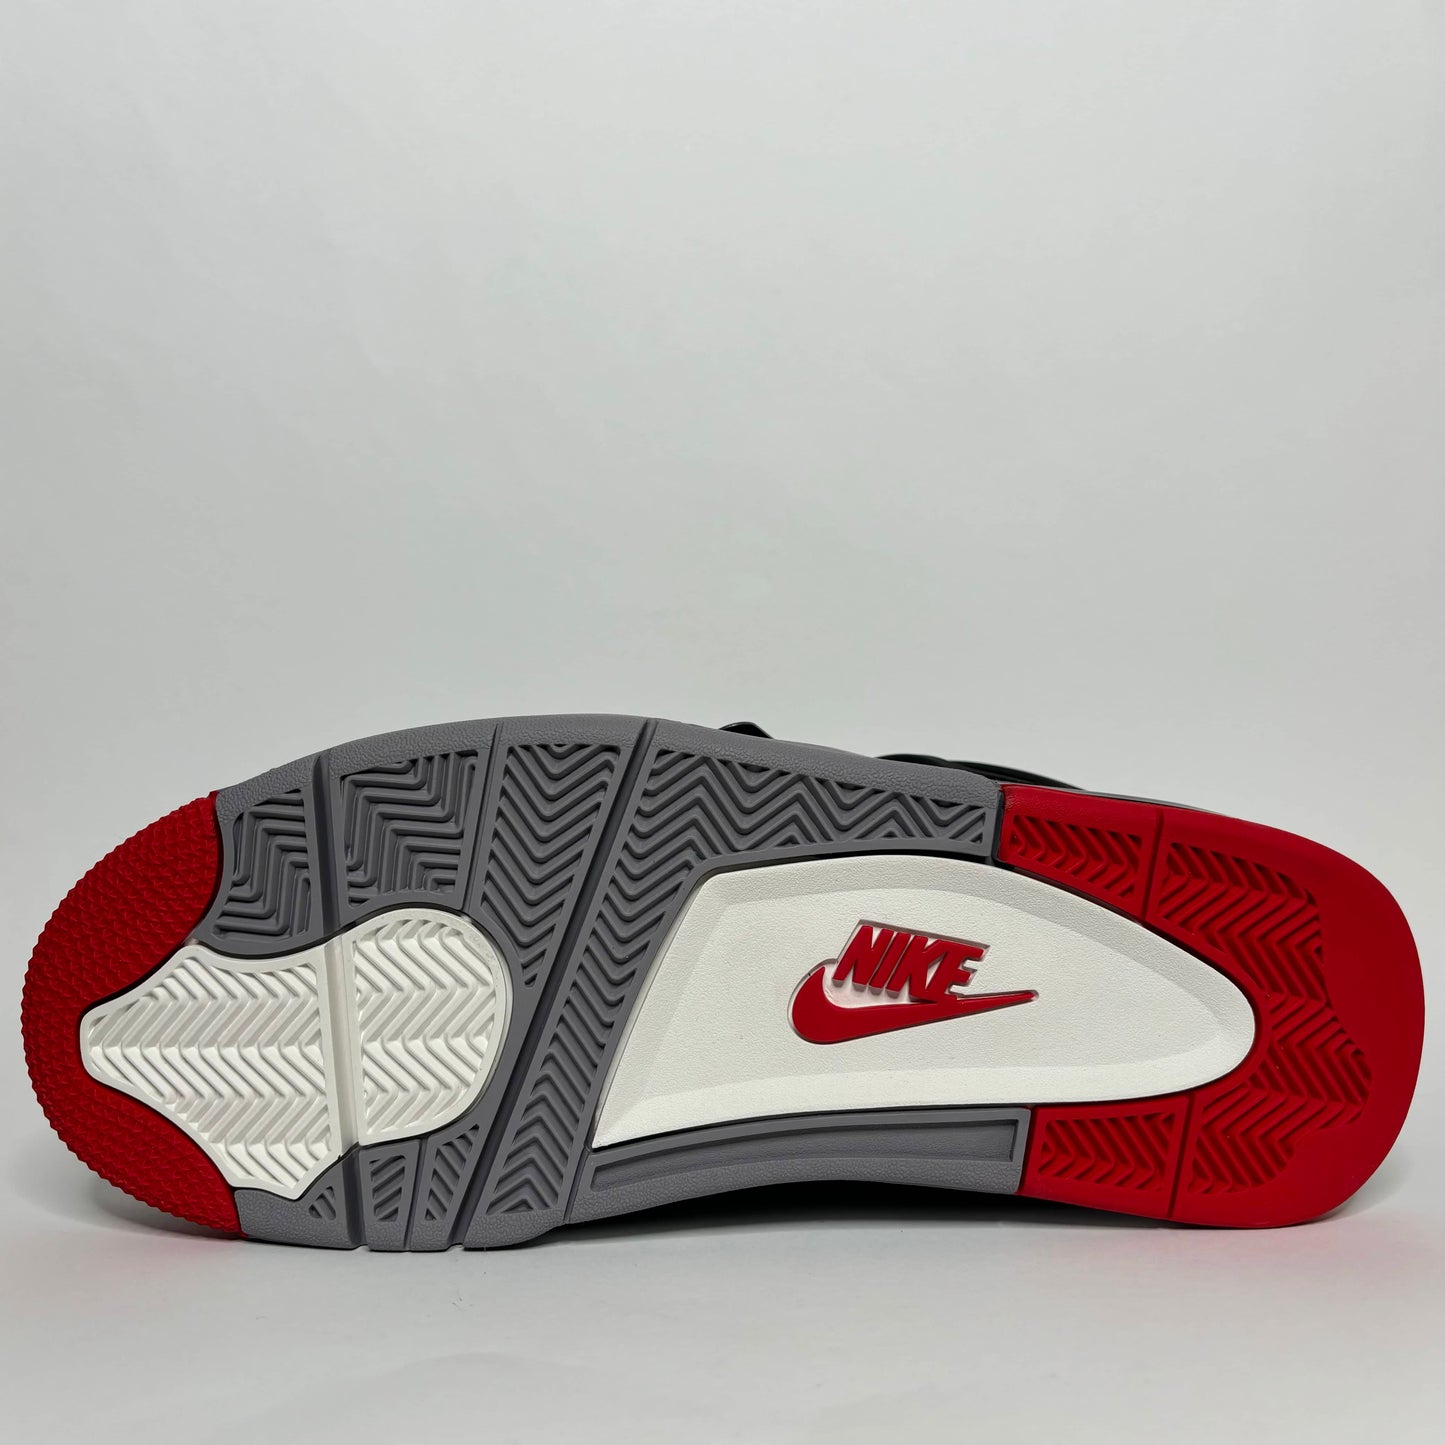 Nike Air Jordan 4 Retro Bred Reimagined sohle